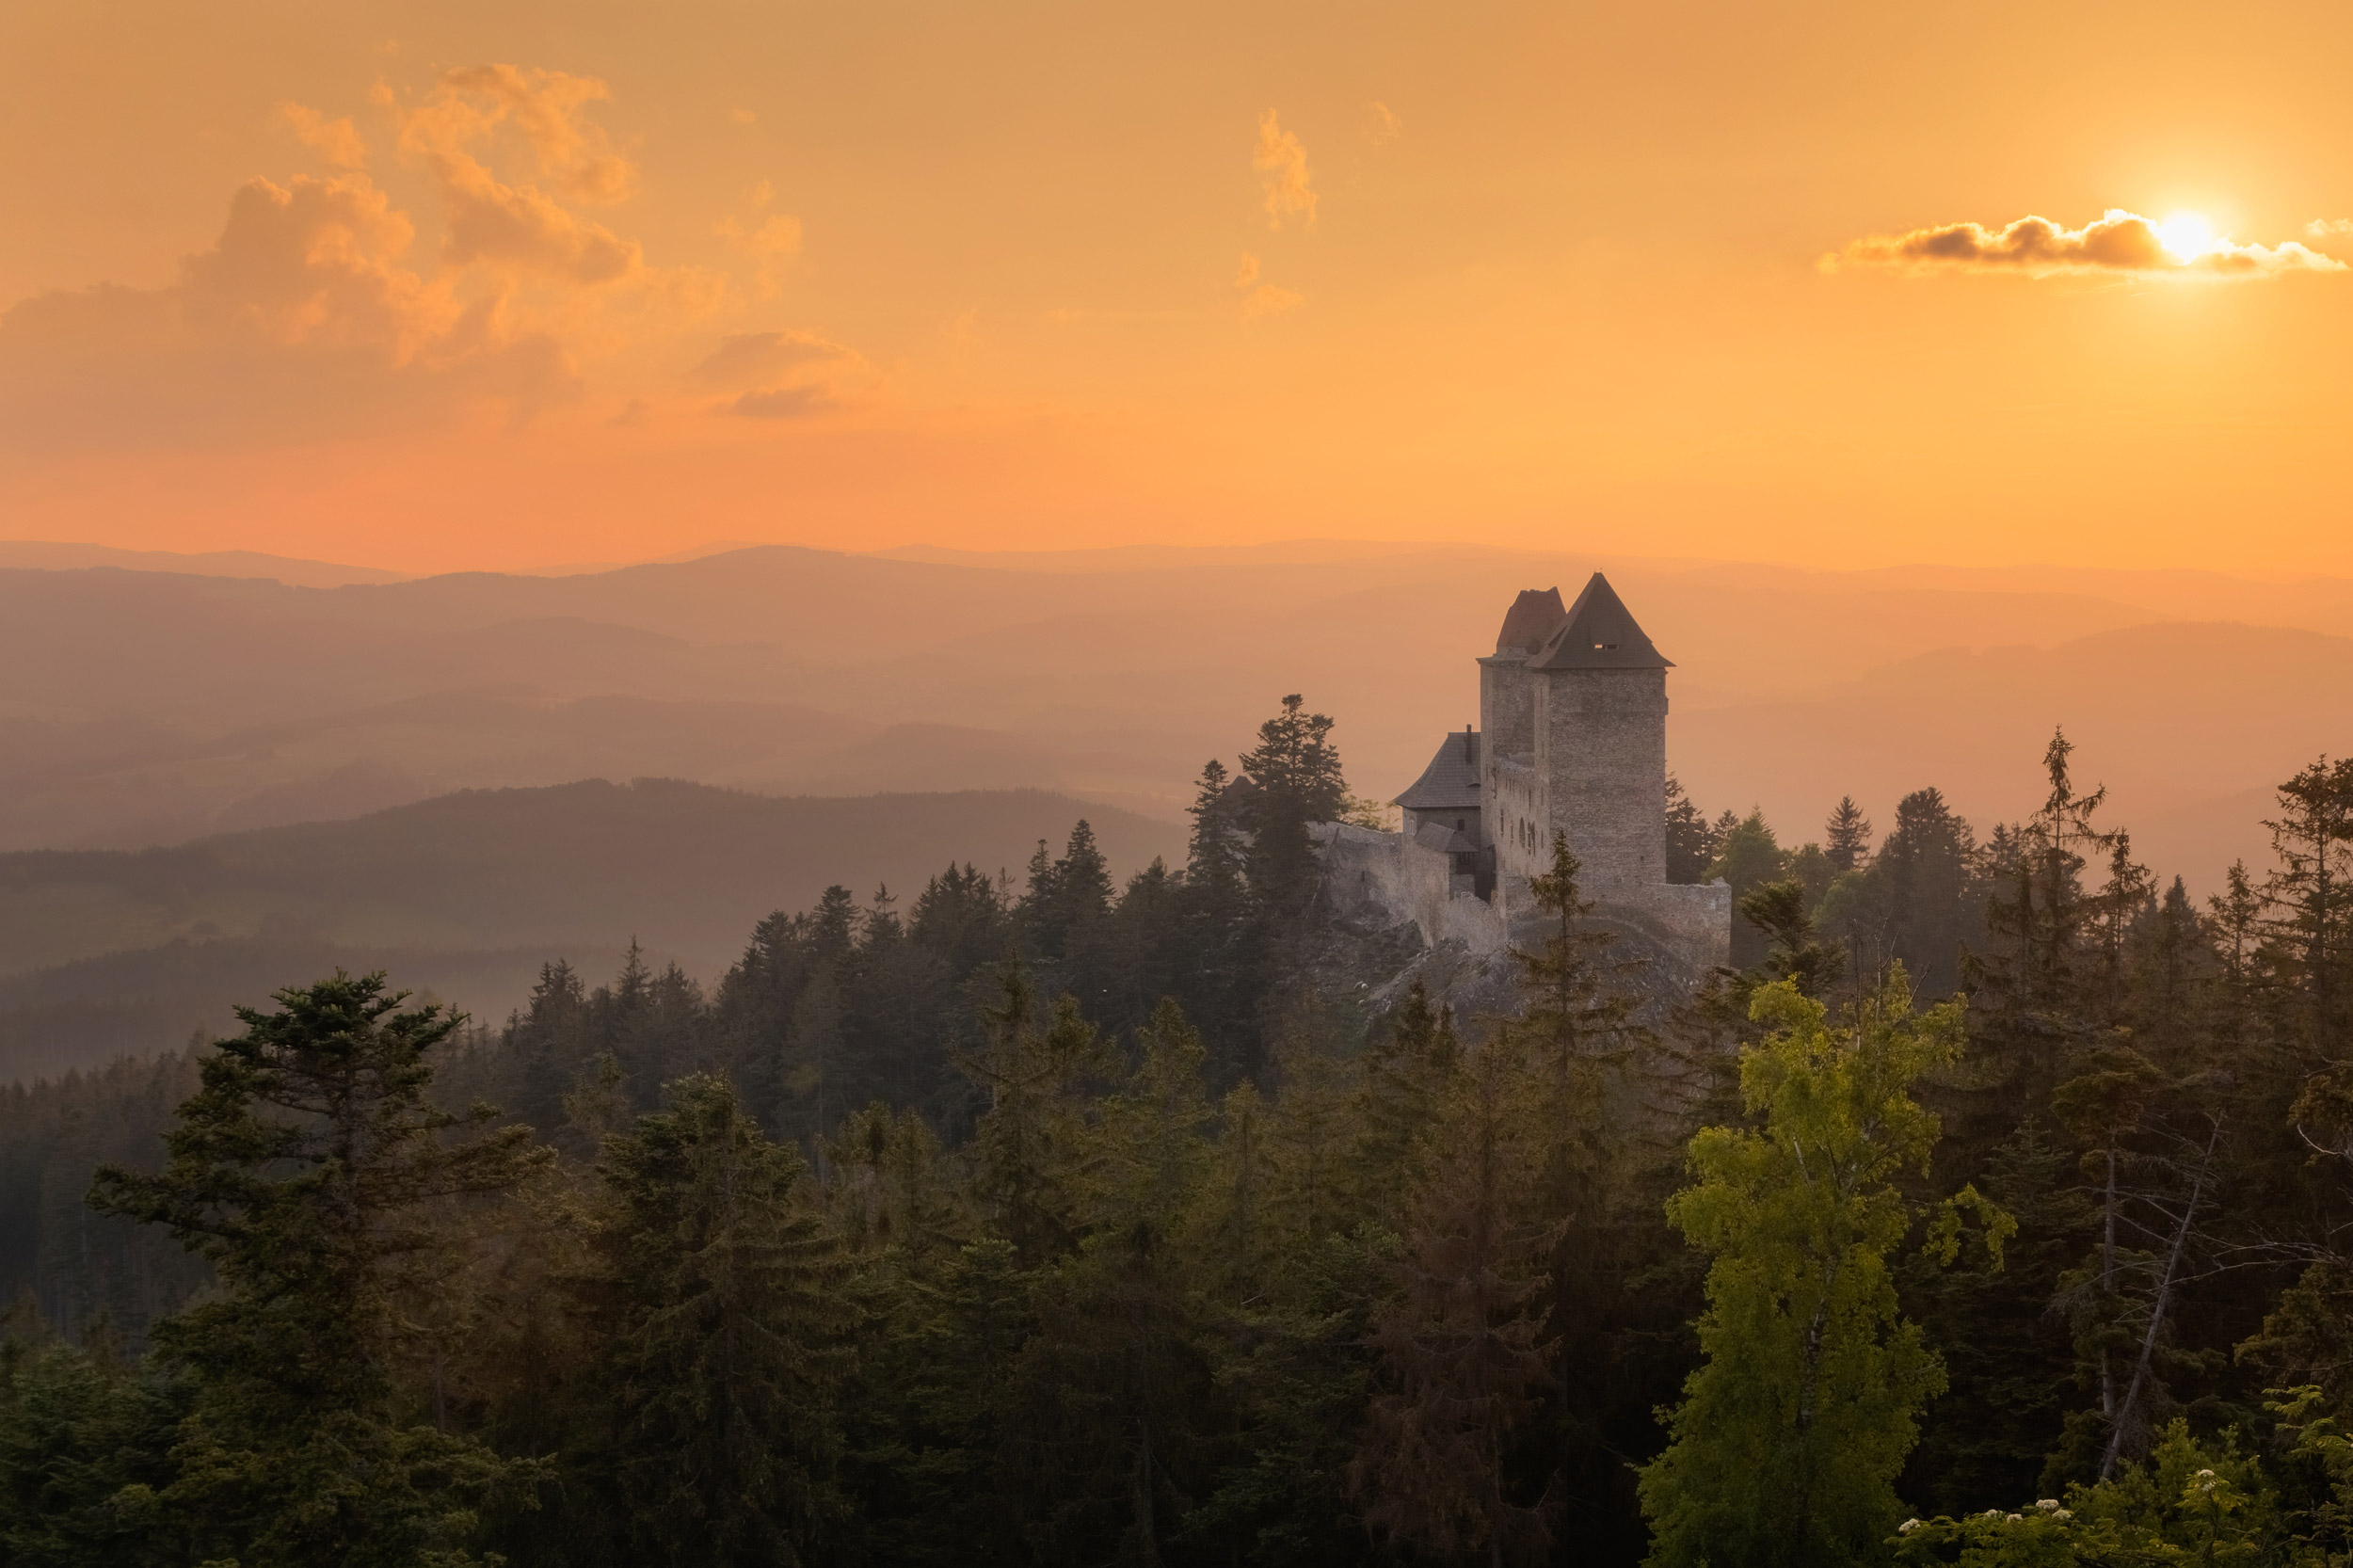 Golden sunset in Kasperk castle, Sumava, Czech Republic. Hills a